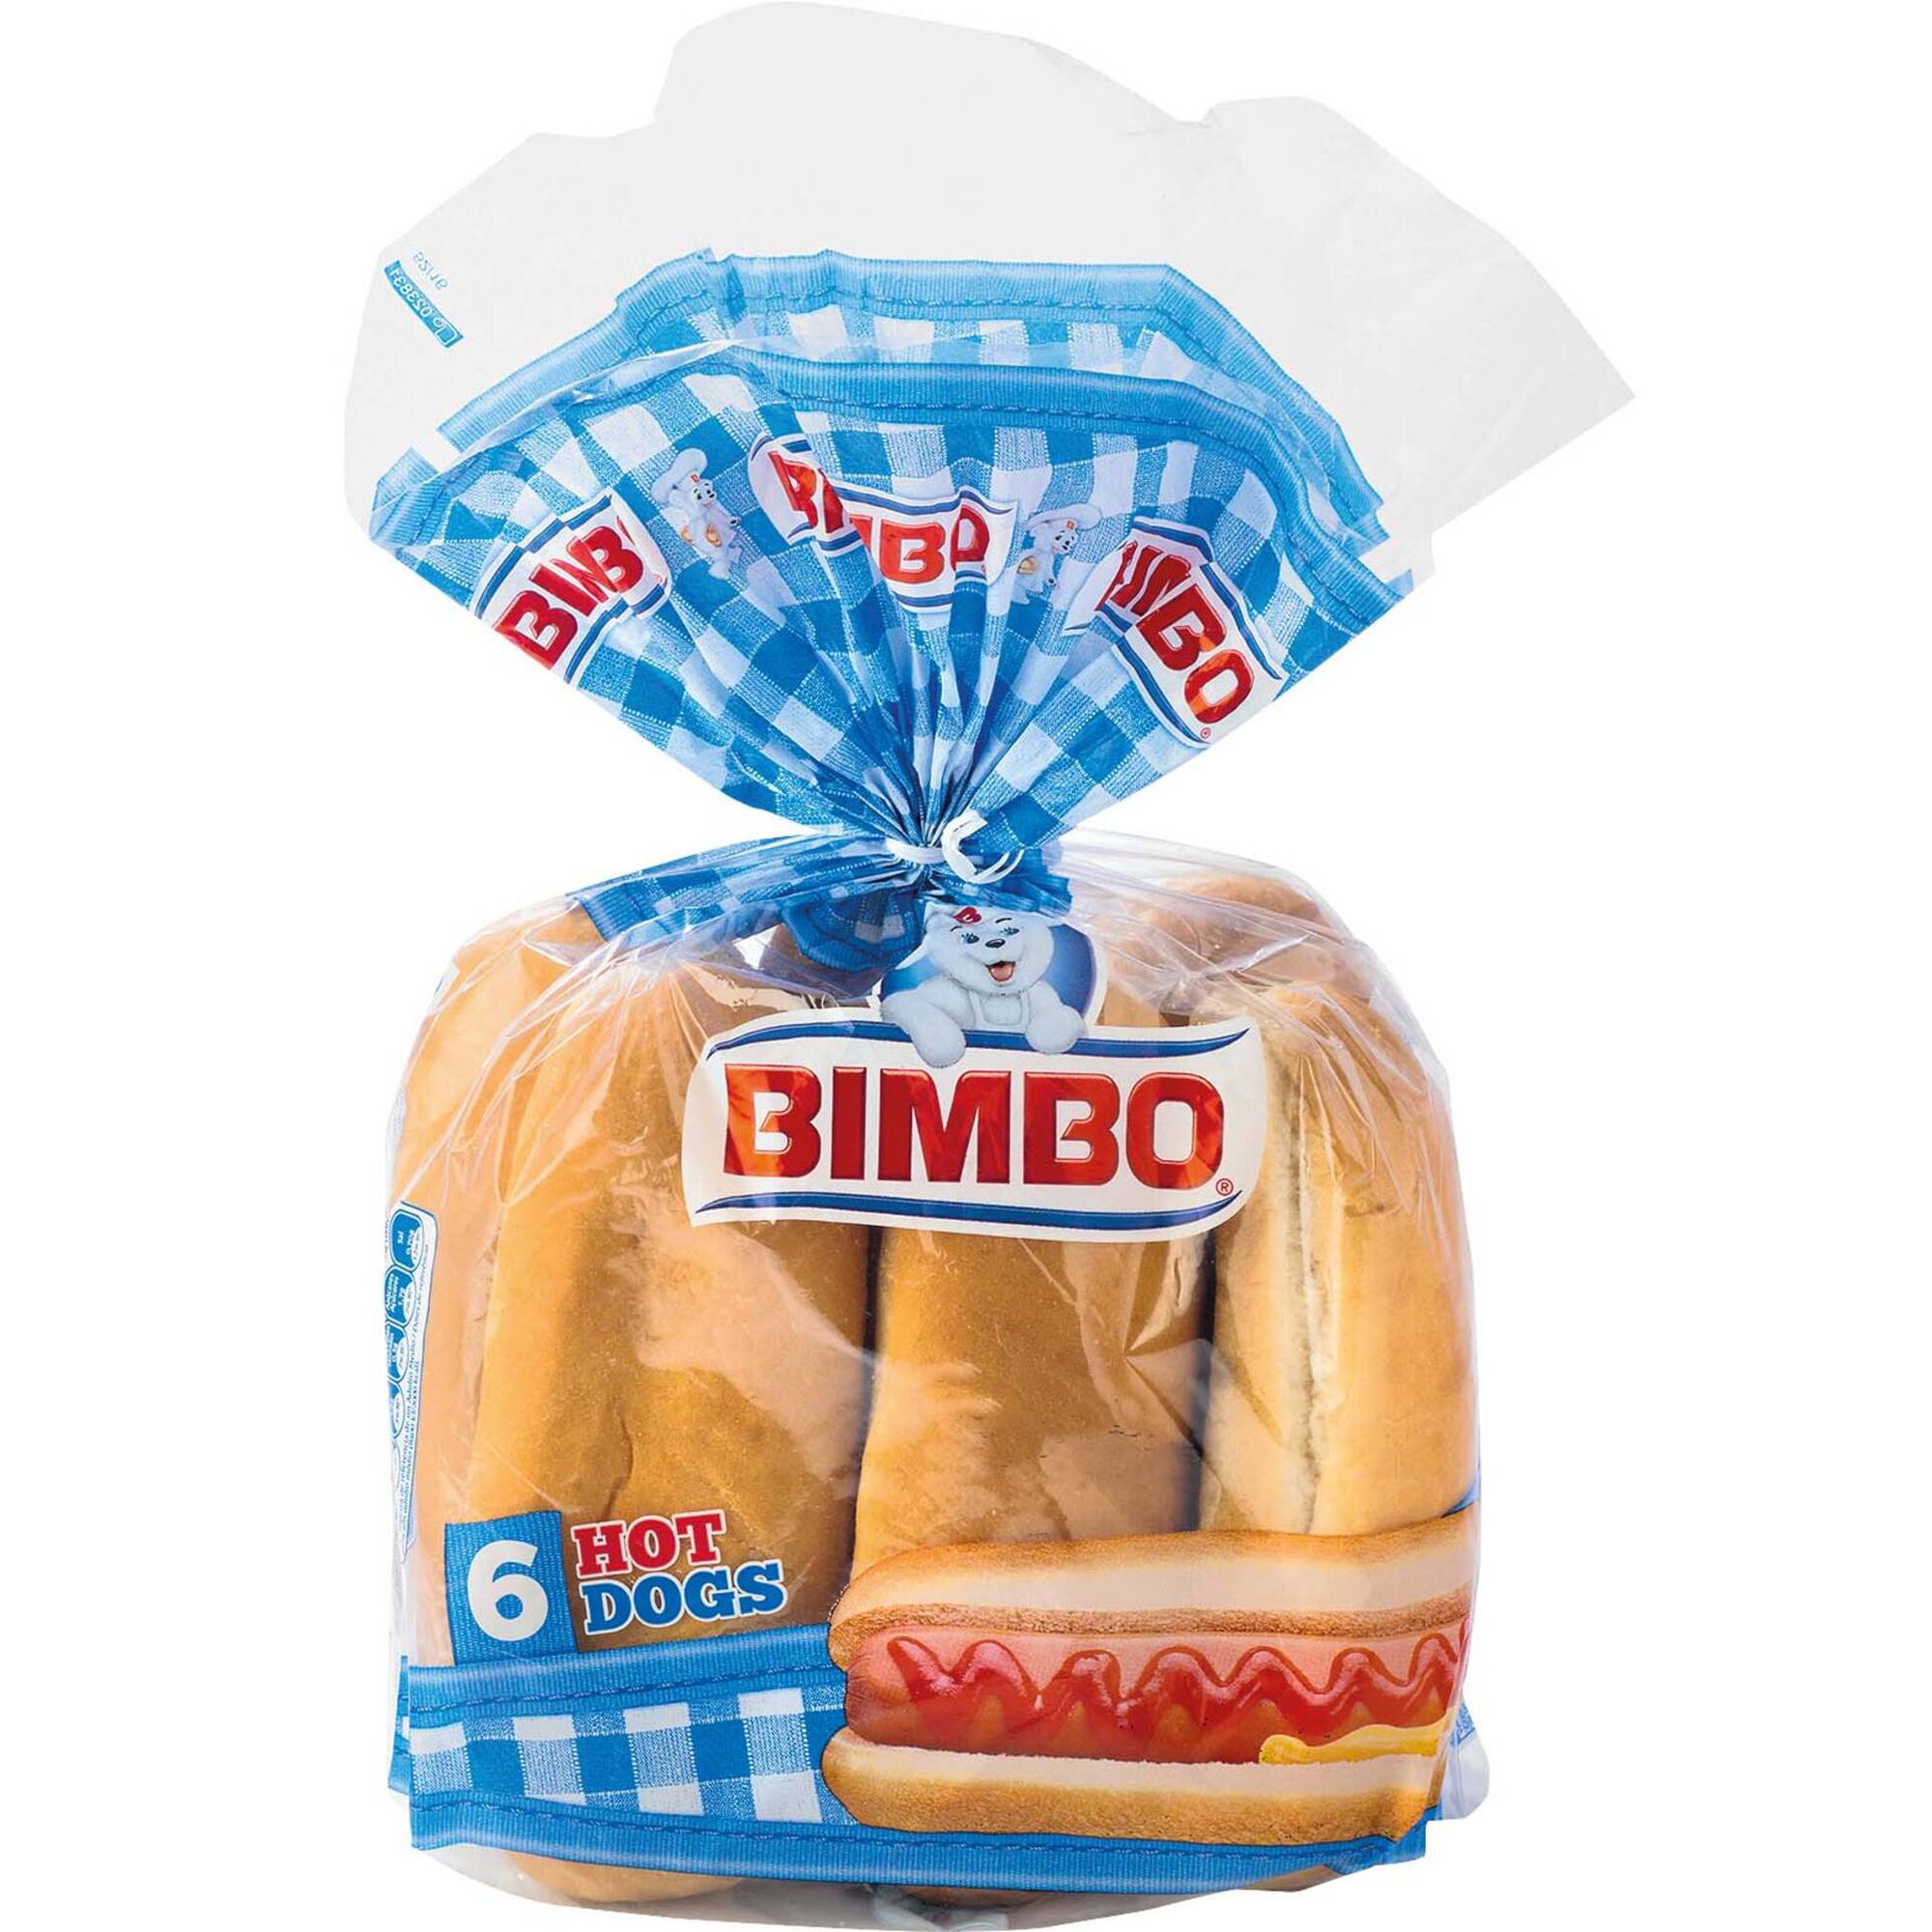 Pão de Cachorro - emb. 330 gr (6 un) - Bimbo